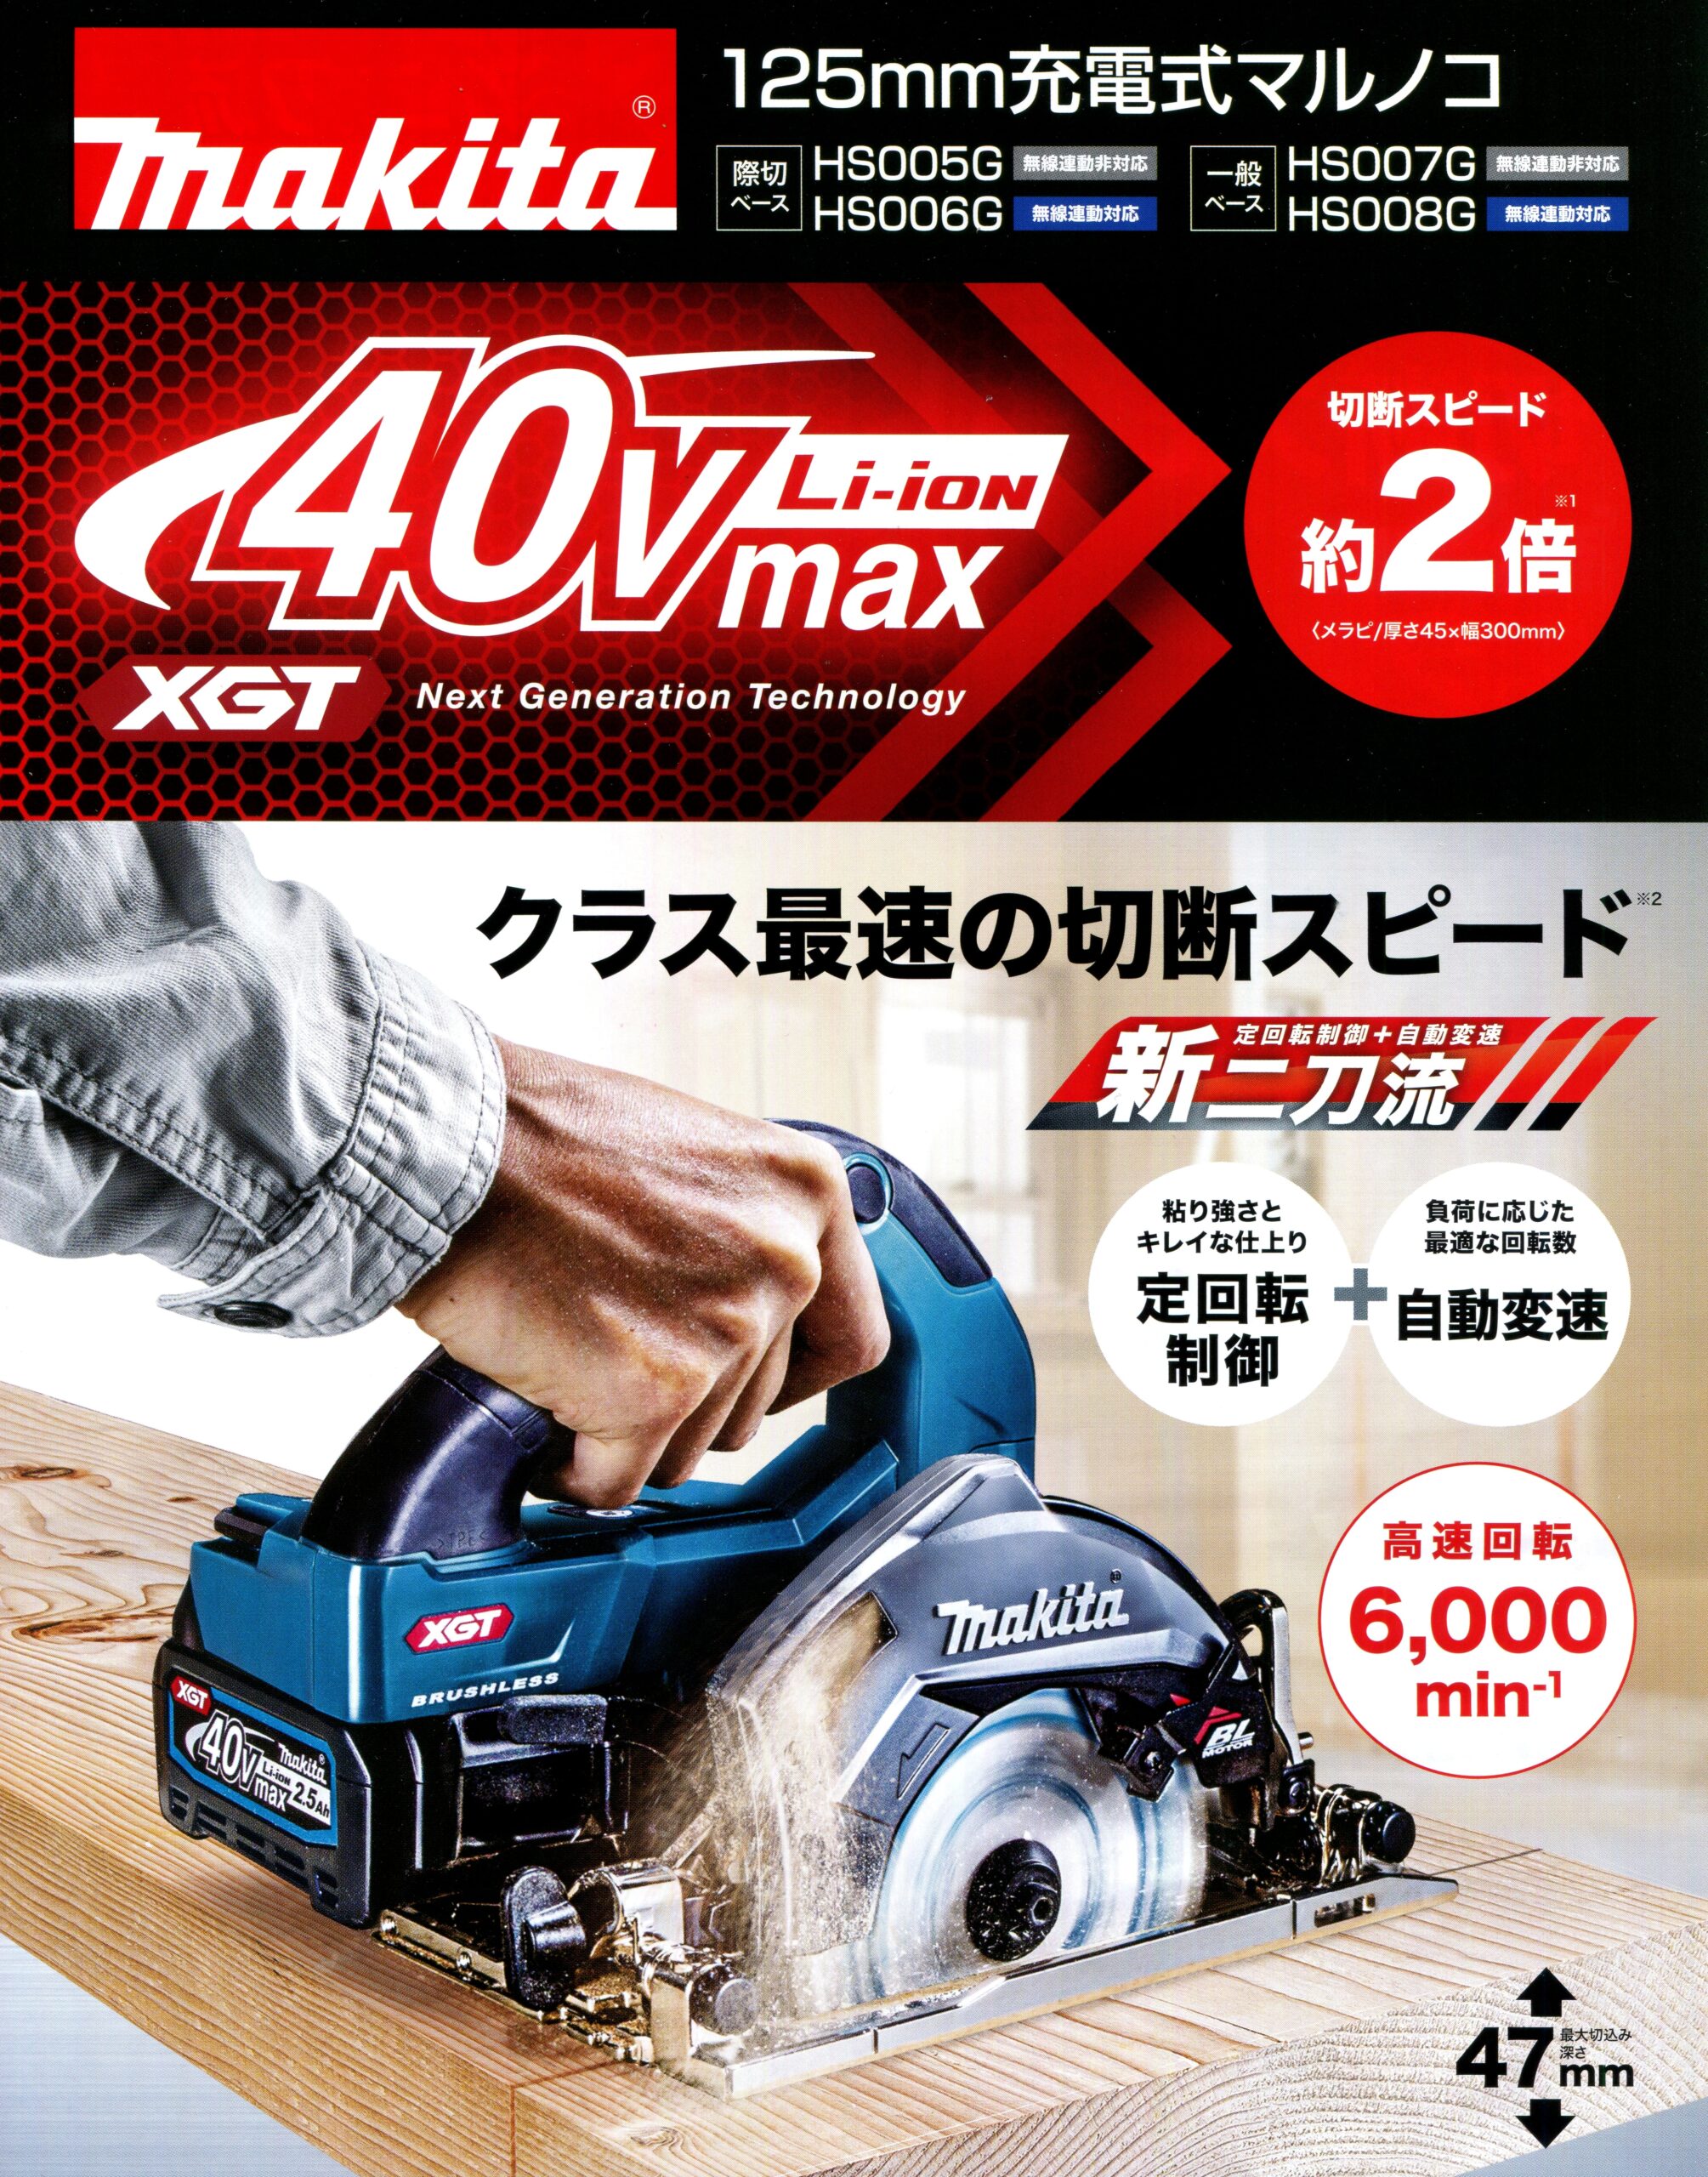 マキタ HS005GRDX 40Vmax充電式マルノコ 125mm【際切りベース】 ウエダ